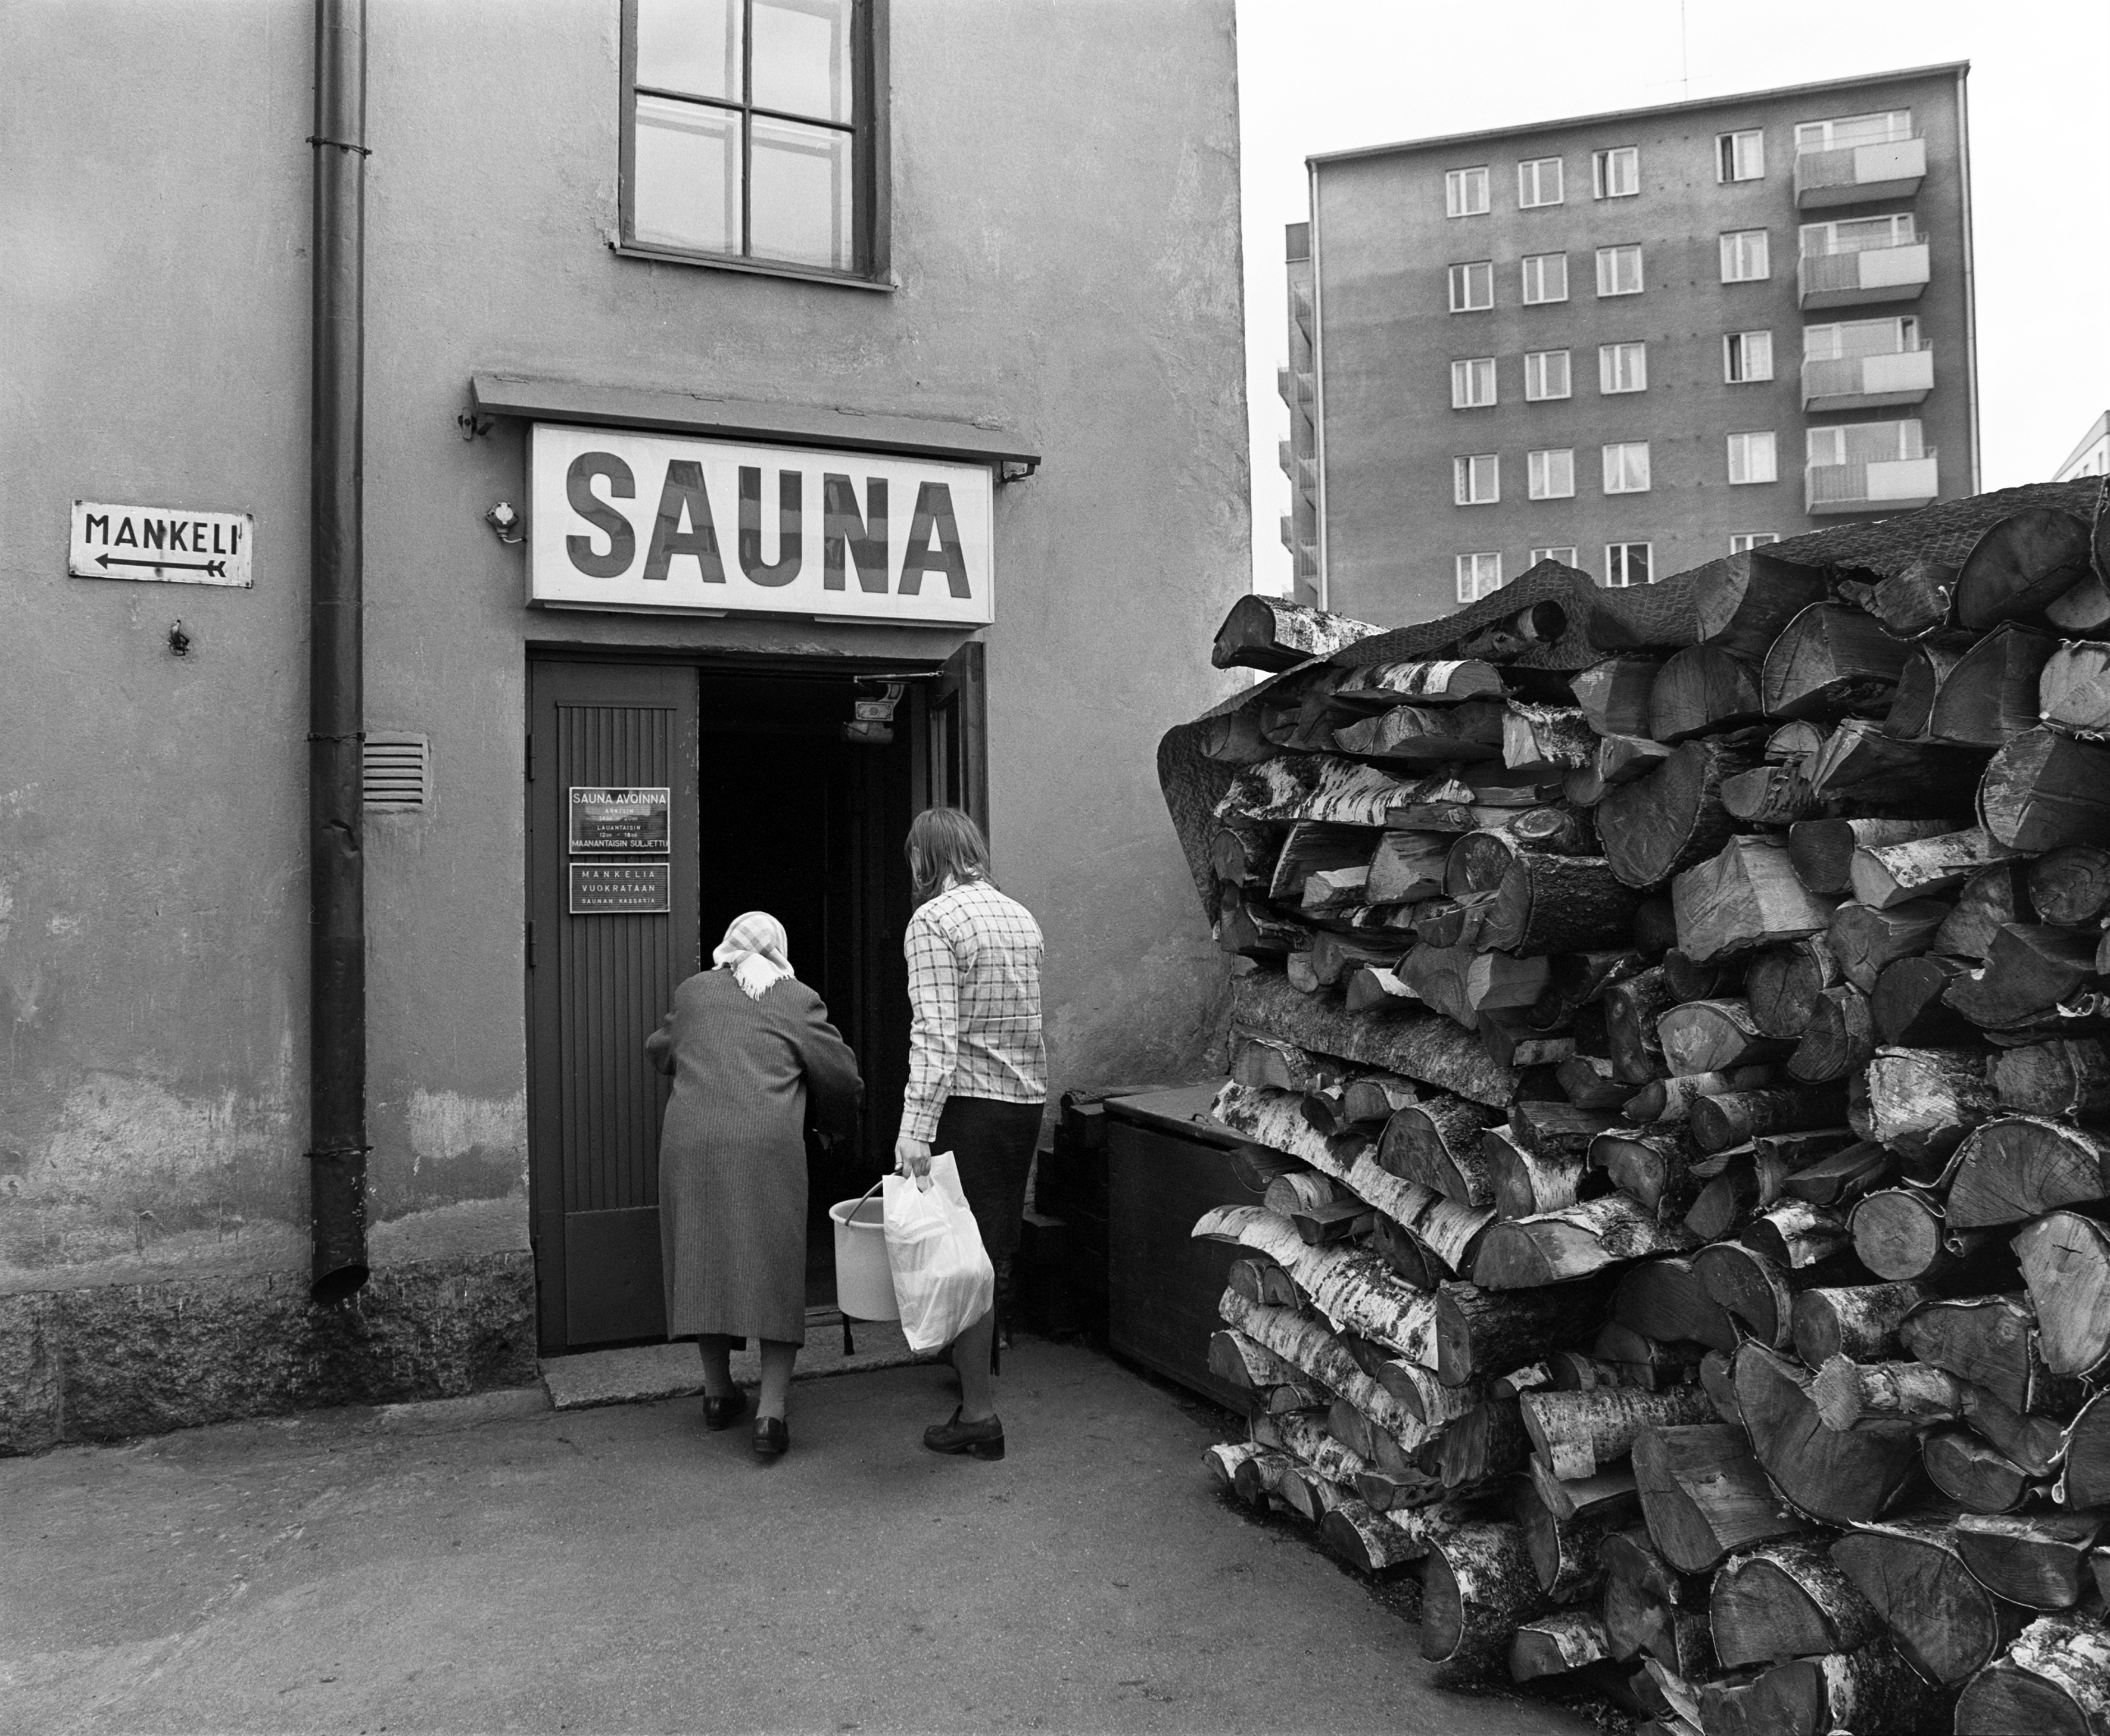 ヘルシンキ市カッリオ地区のパブリック・サウナ（1976年に撮影されたもの）